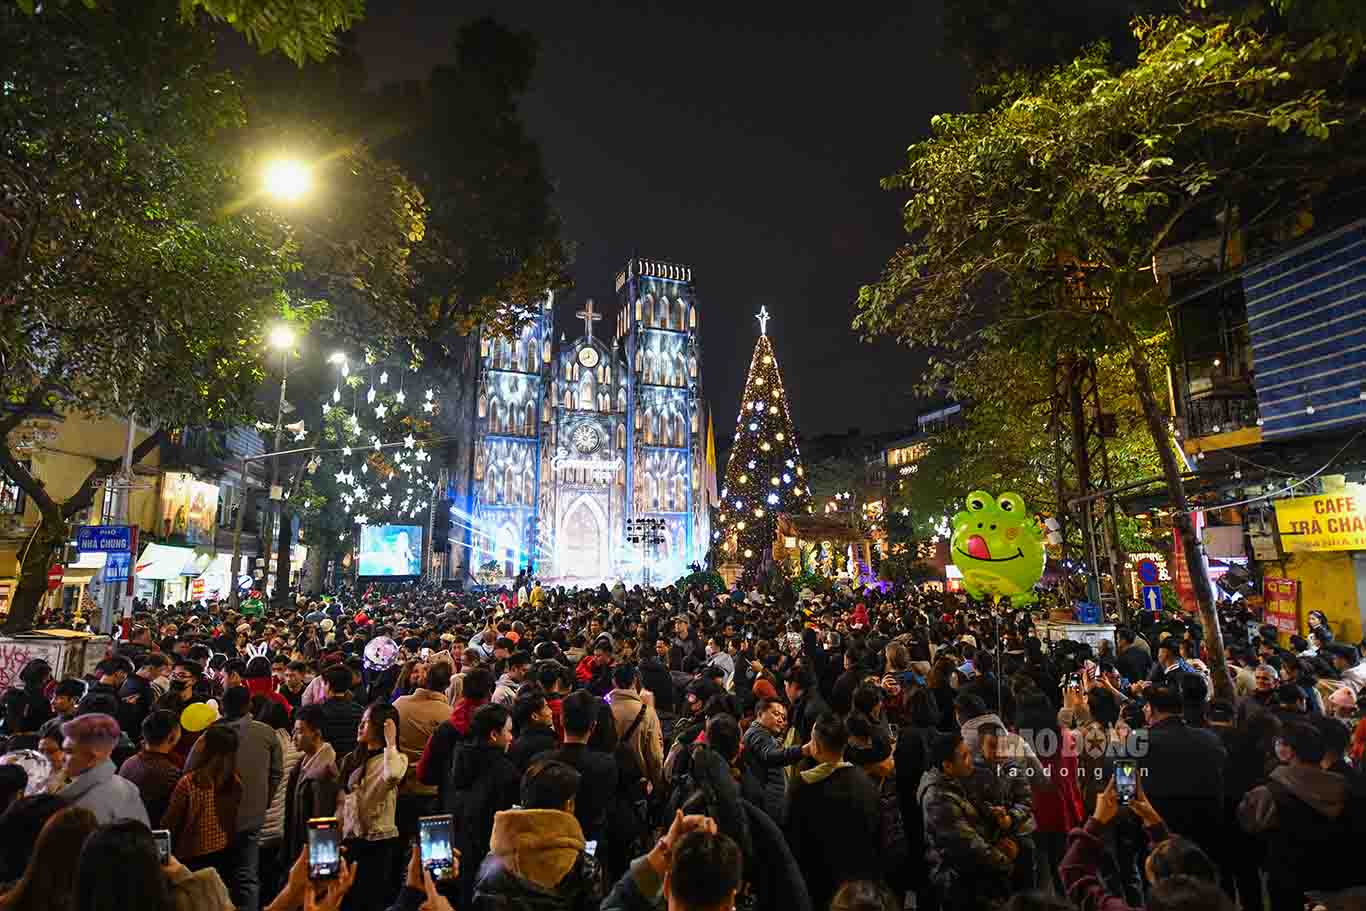 Nhà Thờ Lớn luôn là điểm đến mừng Giáng sinh đông nhất tại Hà Nội. Trong tối 24.12, hàng nghìn người nườm nượp đến đây để vui chơi.